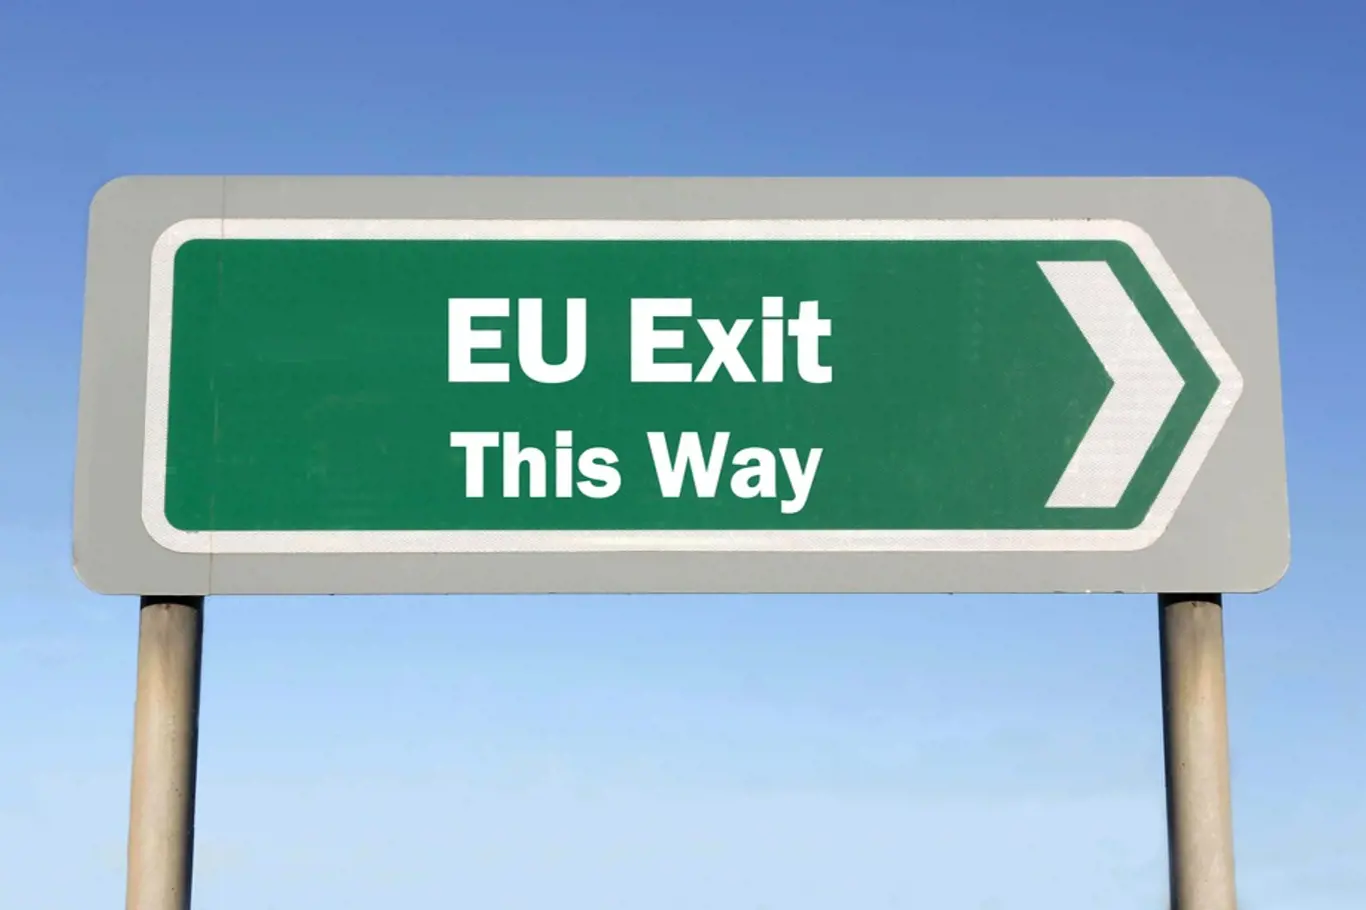 Ilustrační foto - Odchod z EU naznačený dopravní značkou EU exit